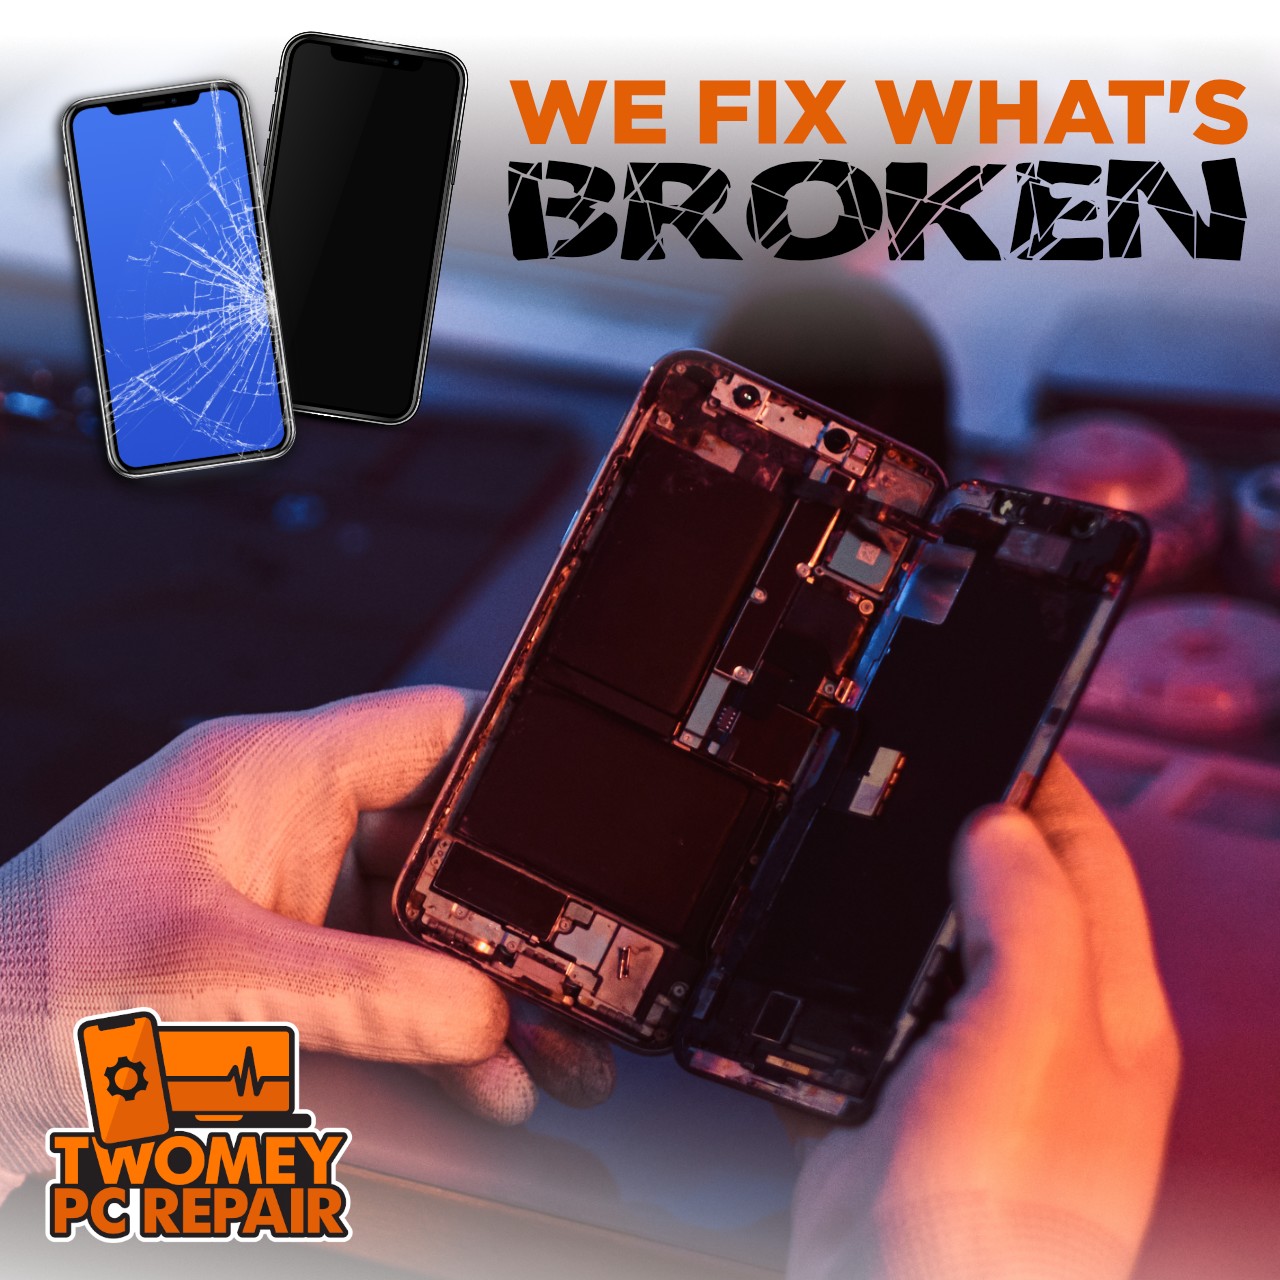 We fix what's broken.